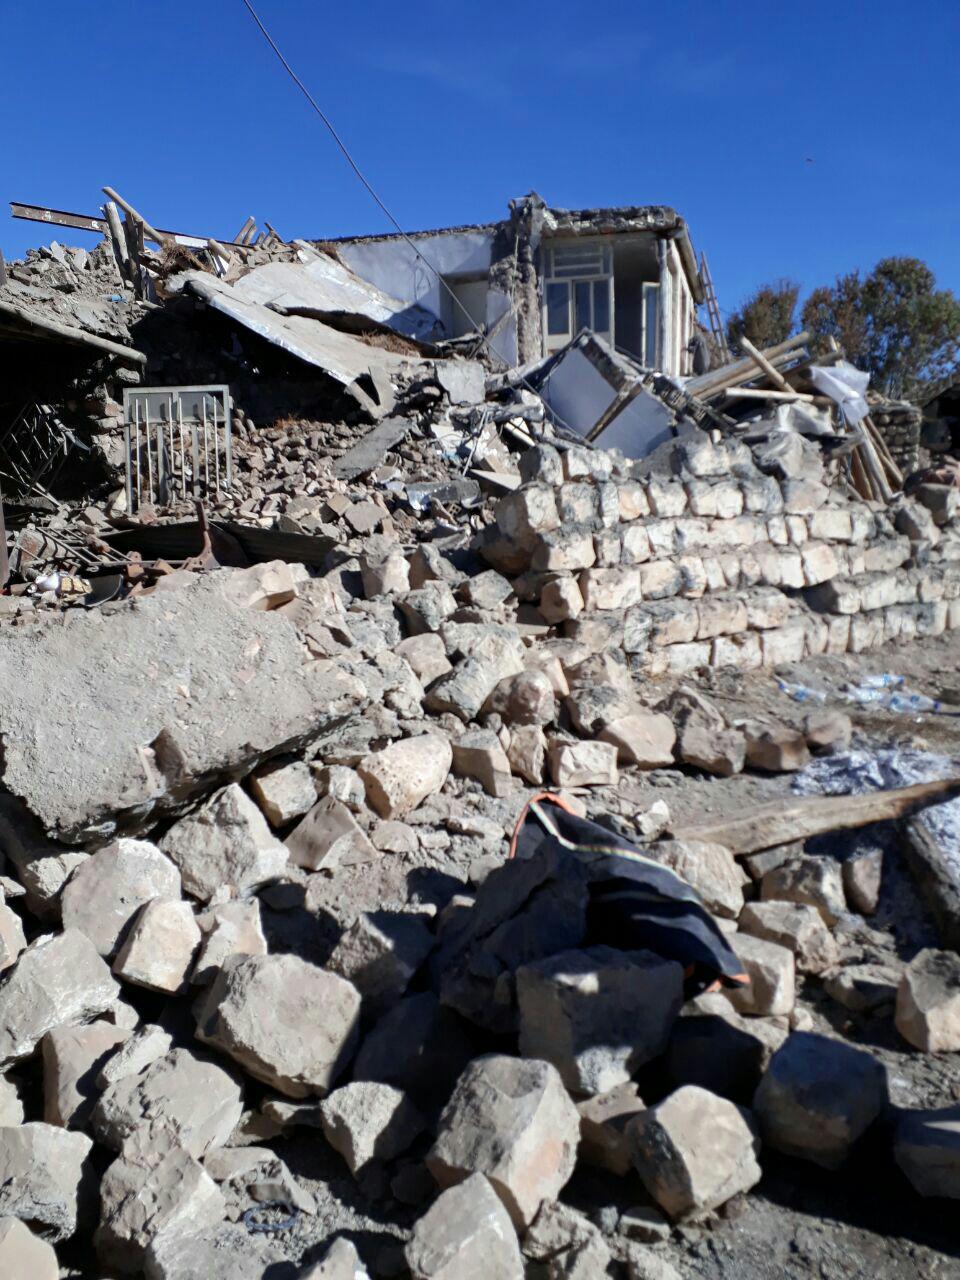 مراجعه ۵۵۰ البرزی به مراکز اهدای خون/ آماده باش 120 نیروی جهادی برای اعزام به مناطق زلزله زده/ ۶۰ نیروی امدادی هلال احمر به کرمانشاه اعزام شدند